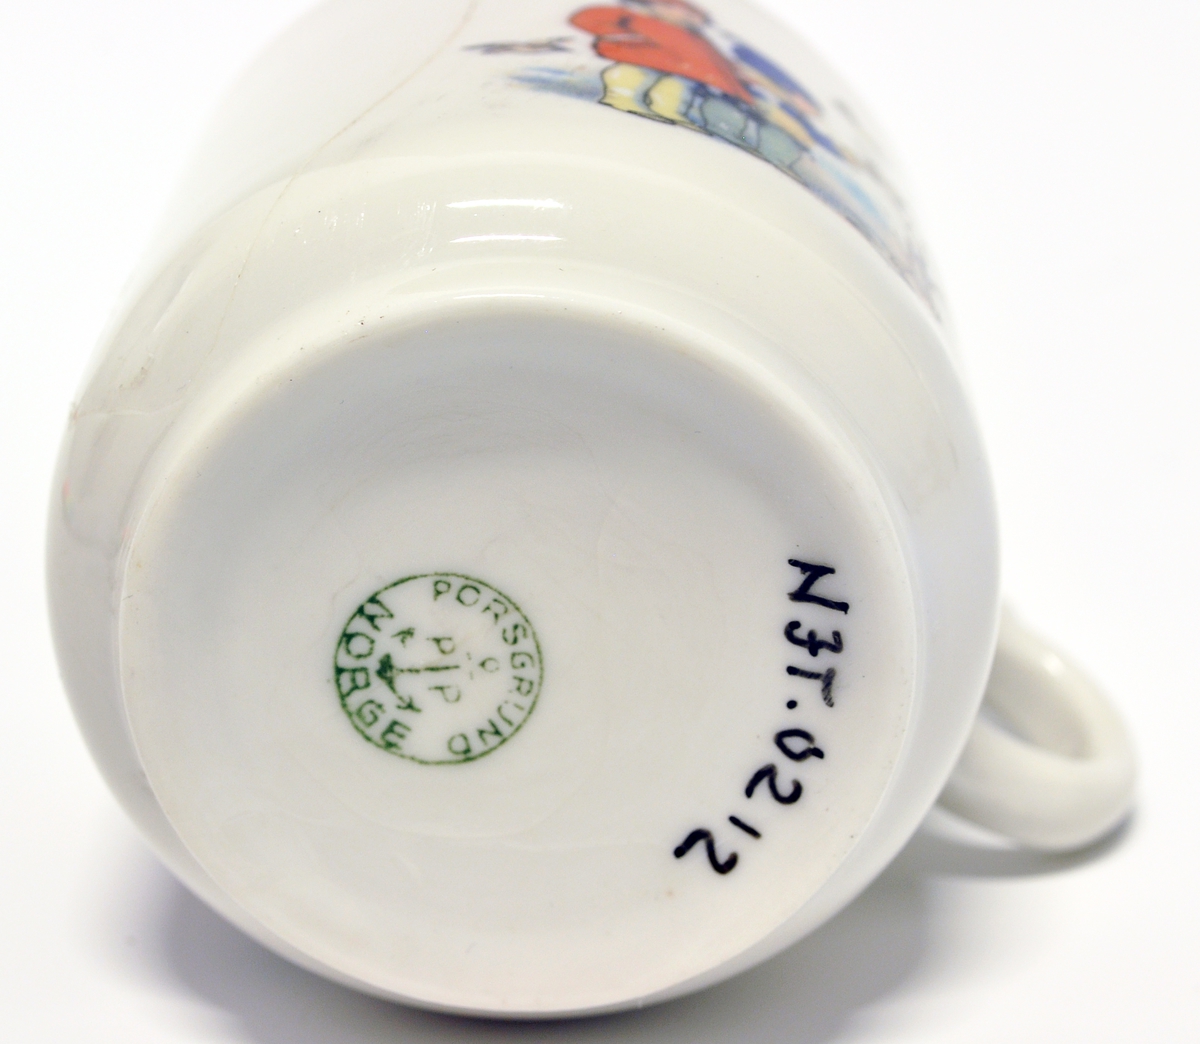 Liten kopp med hank til barneservise, hører sammen med skål av typen NJT.0211.
Modell:
Motiv: Overføringsbilde
Fabrikkmerke: Grønt anker med PP og PORSGRUND - NORGE, i sirkel (1913-1930).